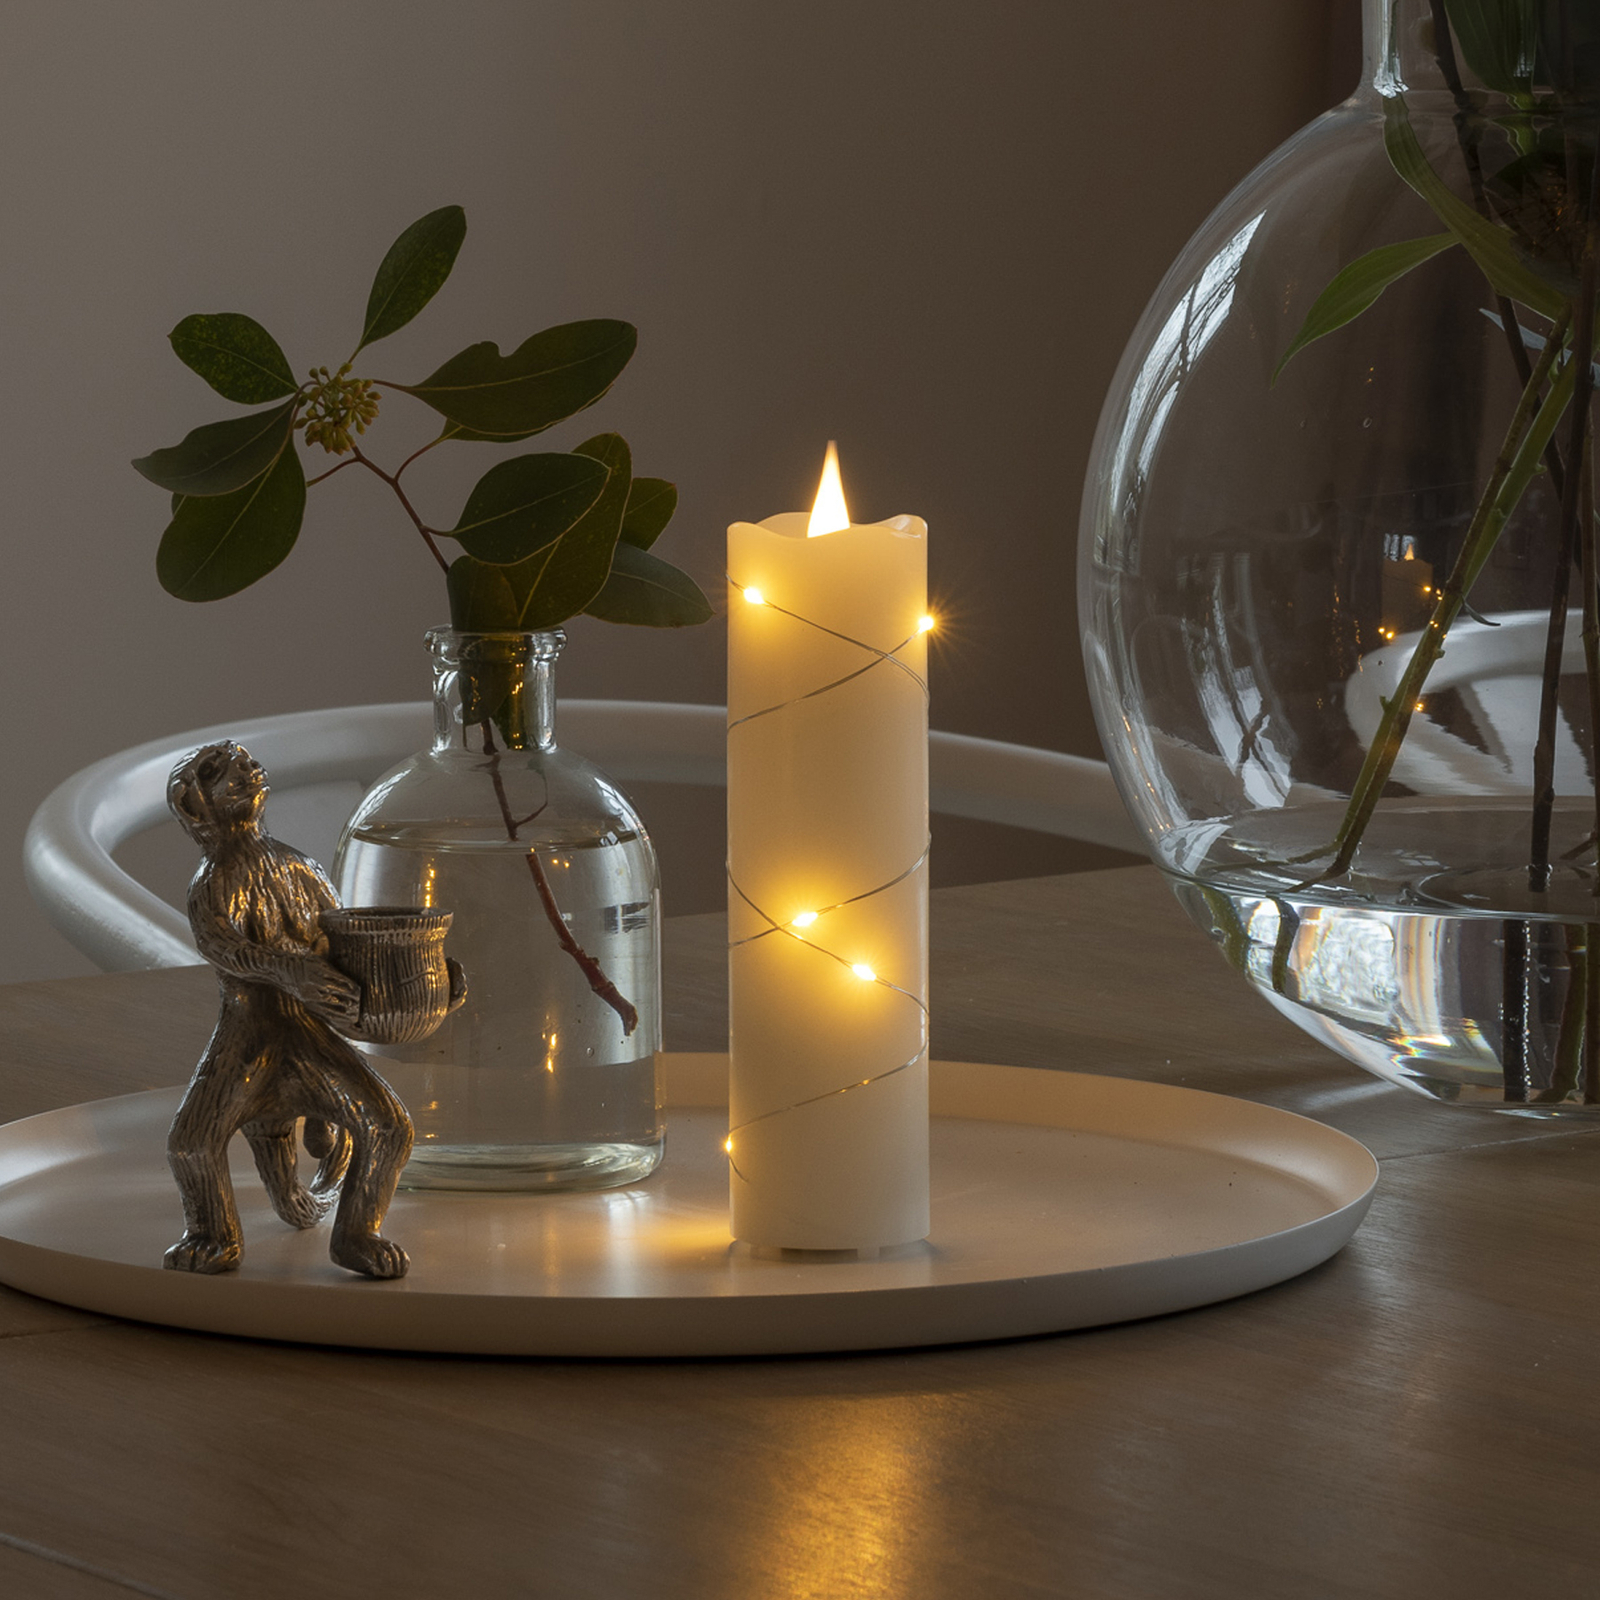 LED vosková sviečka krémová farba jantárová 17,8 cm